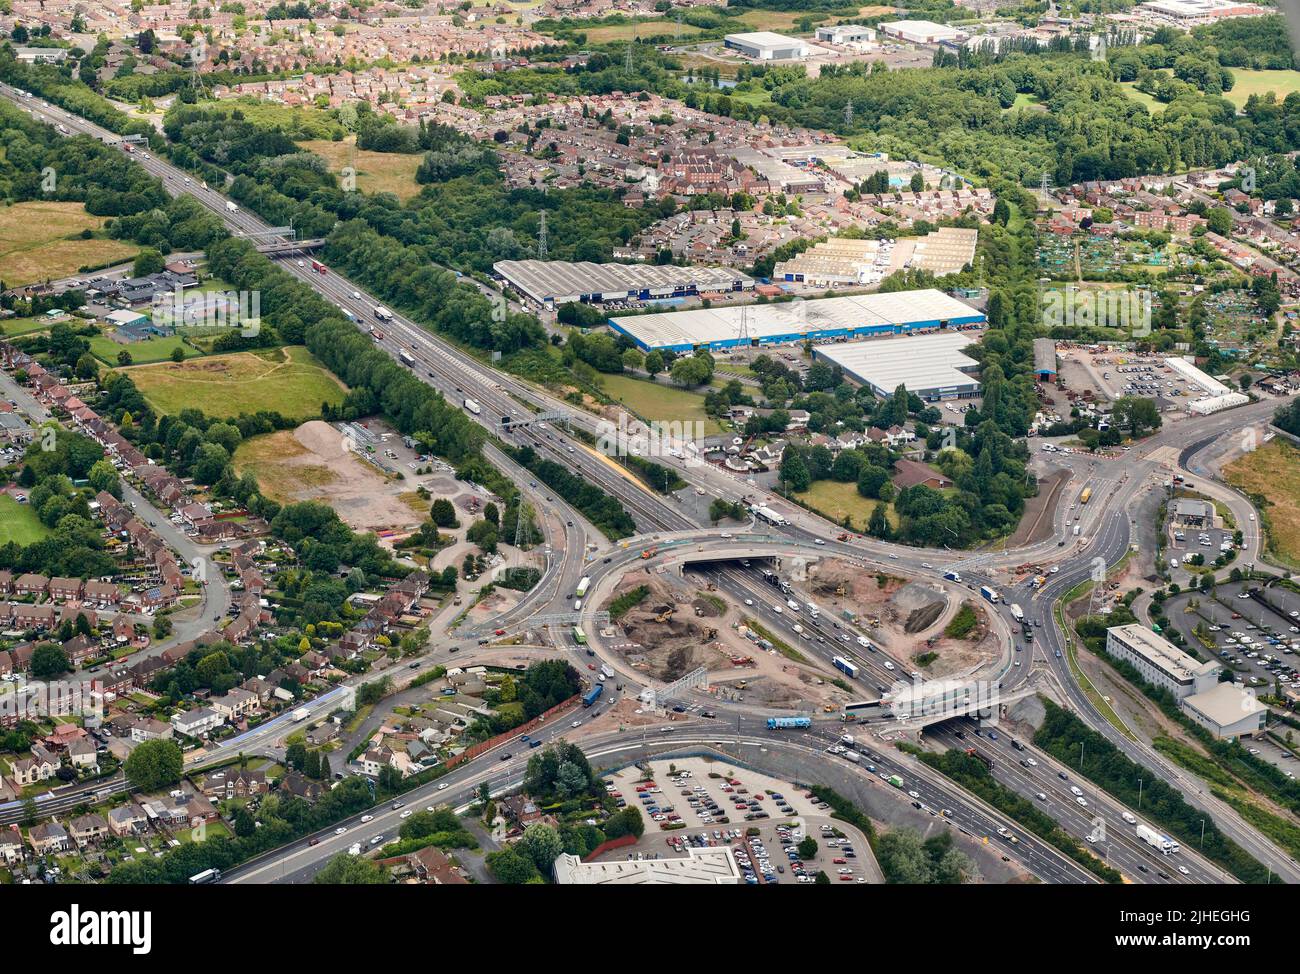 La reconstrucción de la salida 10 de la autopista M6, rodada desde el aire, que conecta la ruta Back Country y Walsall, West Midlands, Reino Unido Foto de stock